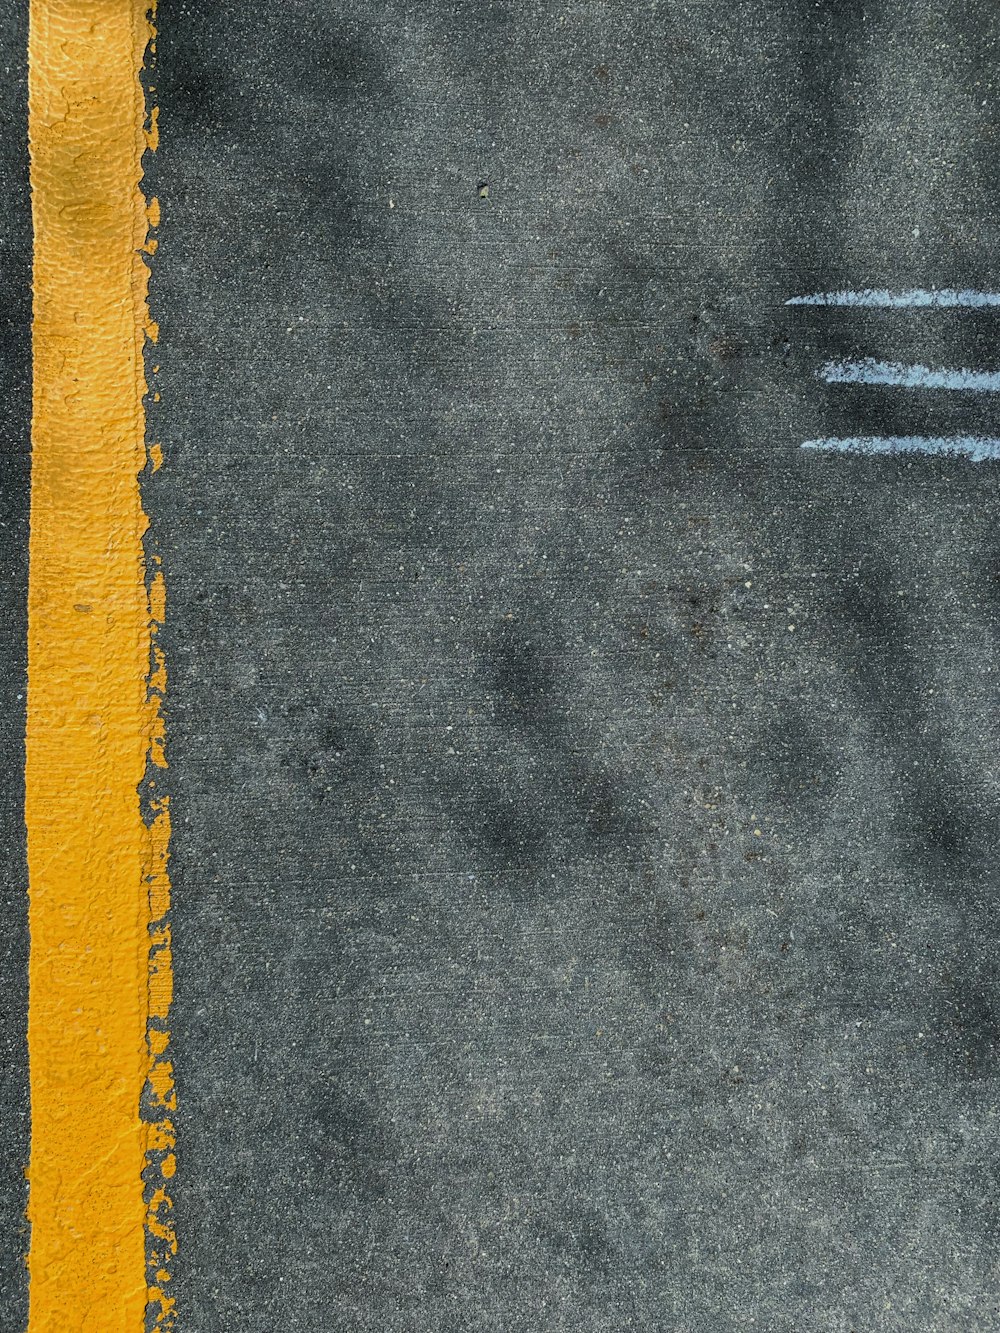 道路脇に描かれた黄色い線